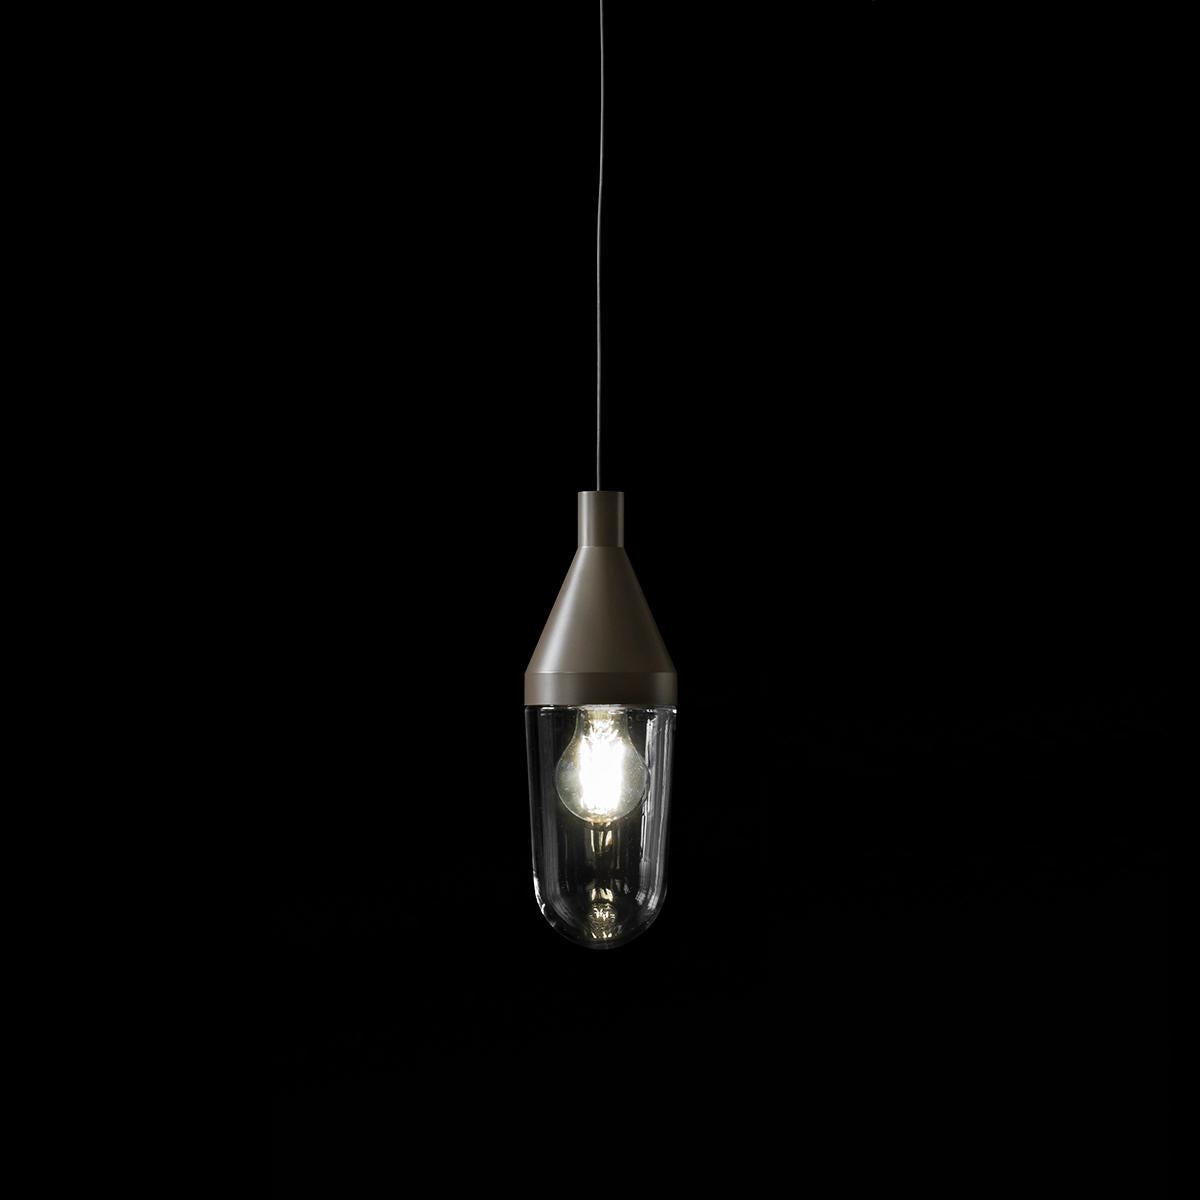 Lampe à suspension 'Niwa' conçue par Christophe Pillet en 2017. Lampe à suspension donnant une lumière diffuse. Structure en aluminium laqué, diffuseur en verre soufflé transparent. Fabriqué par Oluce, Italie.

Niwa est une lampe